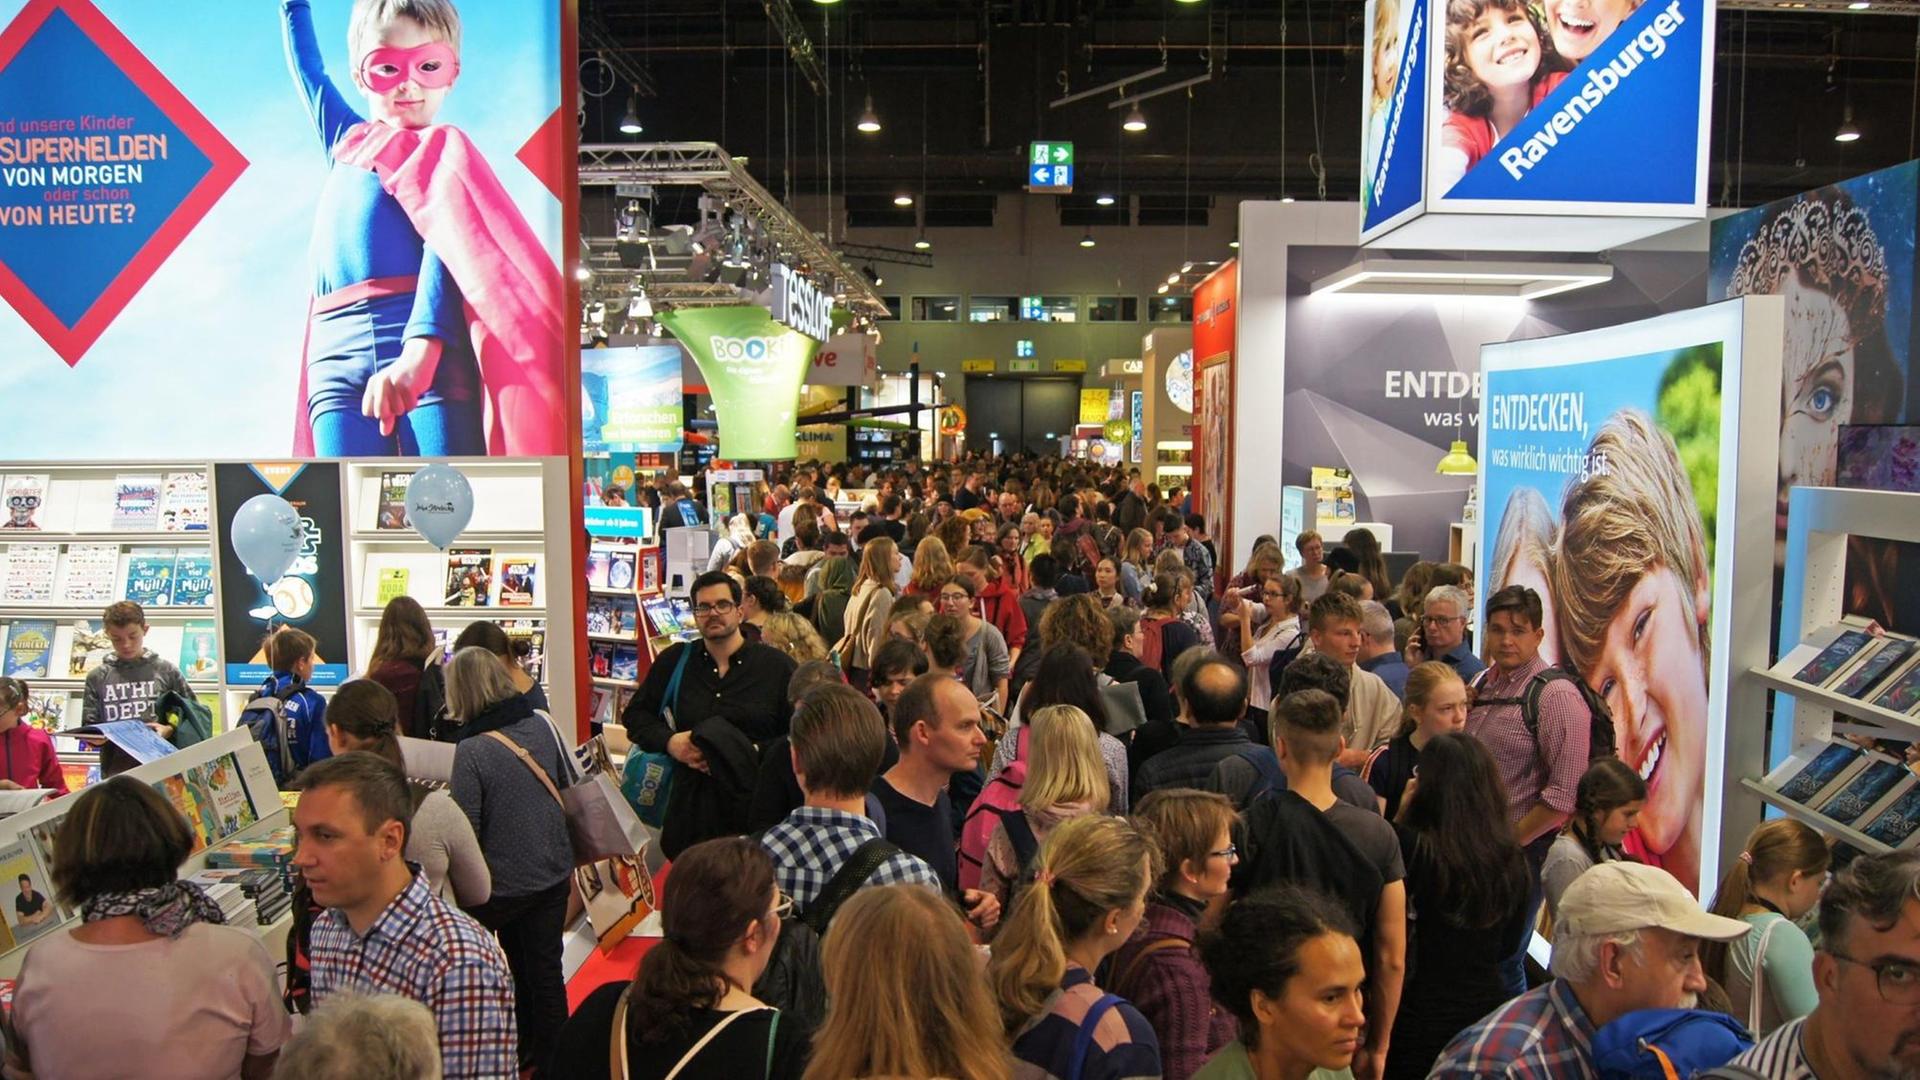 Blick in eine Ausstellungshalle der Frankfurter Buchmesse 2019, die Gänge sind voller Menschen, die zwischen den Ständen der Verlagen laufen und diese betrachten.